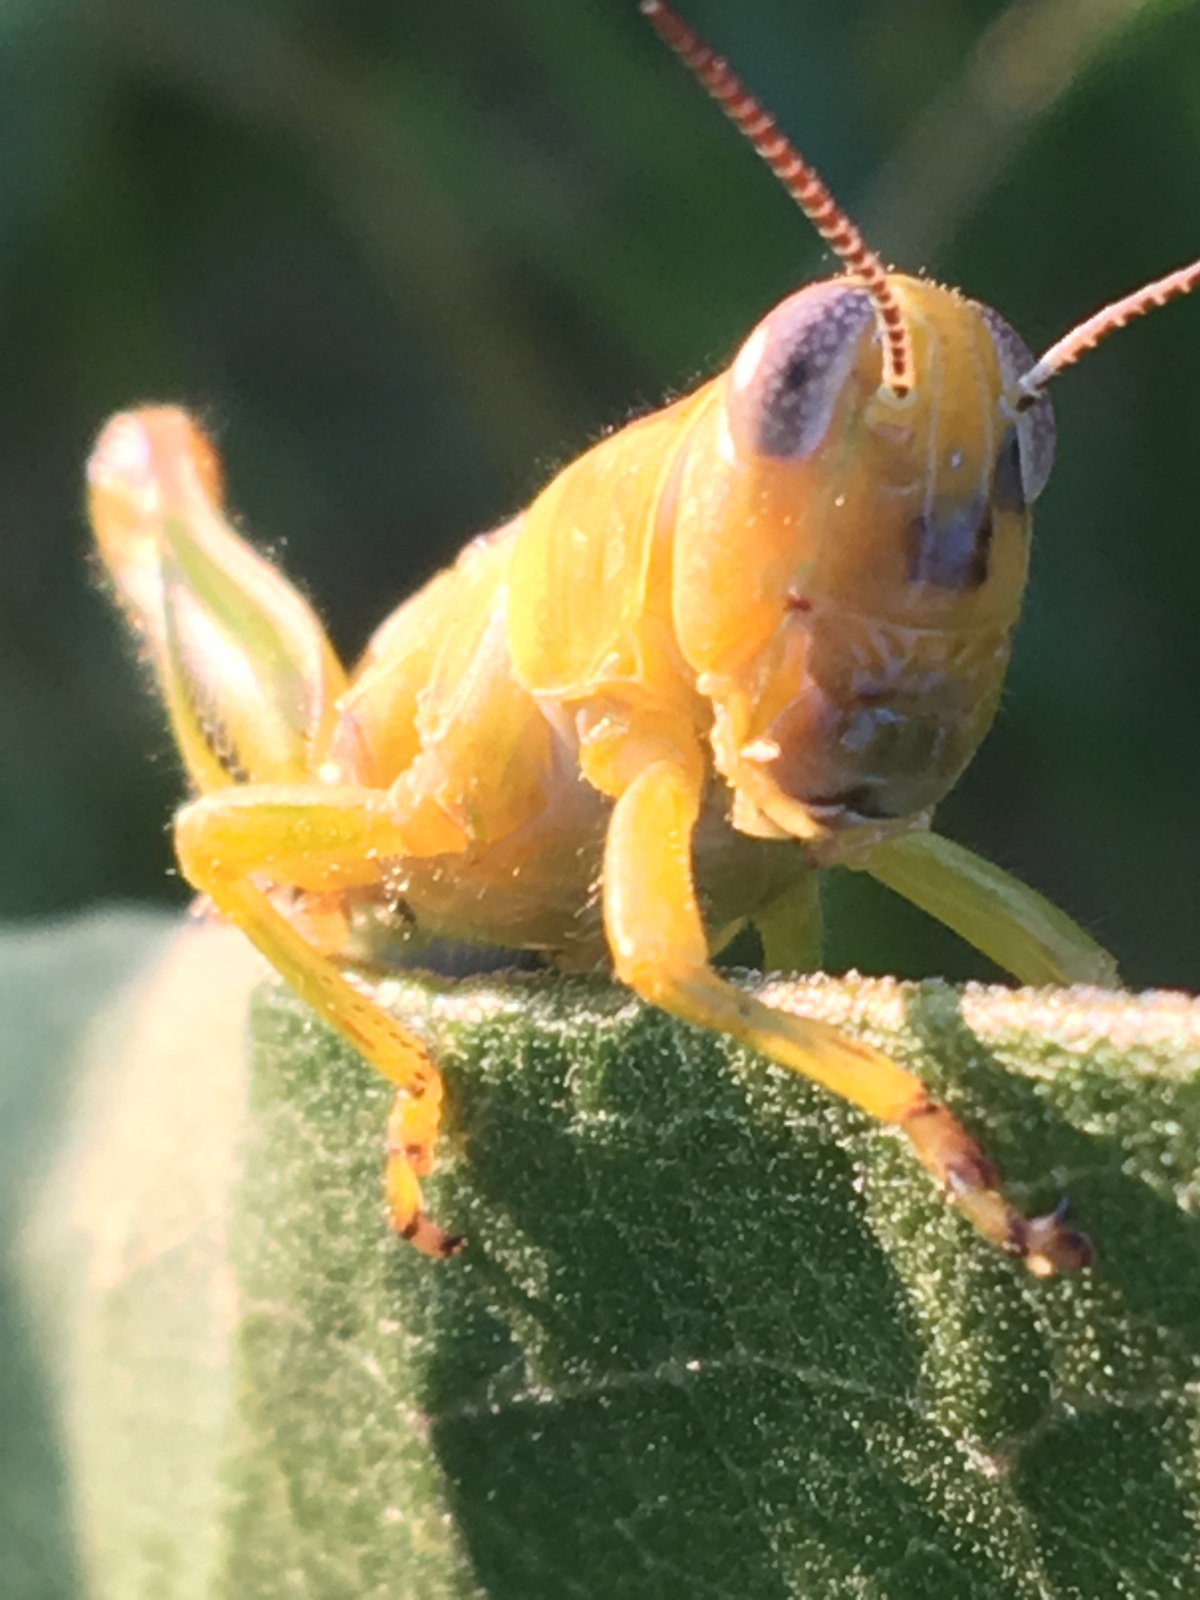 Grasshopper resting on a milkweed leaf.